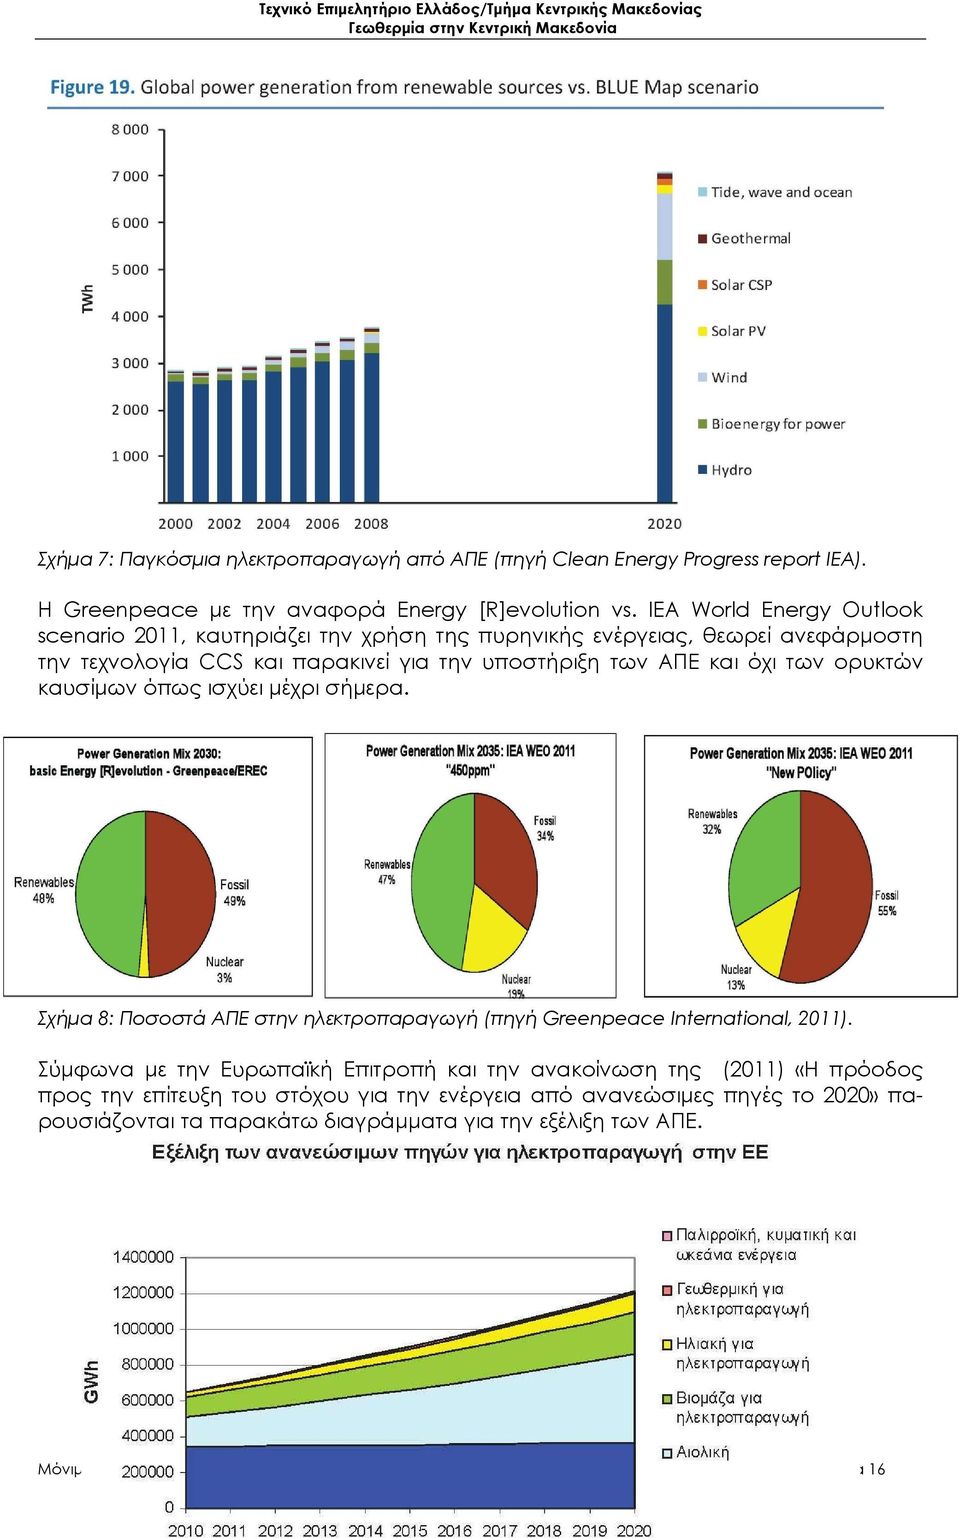 των ορυκτών καυσίμων όπως ισχύει μέχρι σήμερα. Σχήμα 8: Ποσοστά ΑΠΕ στην ηλεκτροπαραγωγή (πηγή Greenpeace International, 2011).